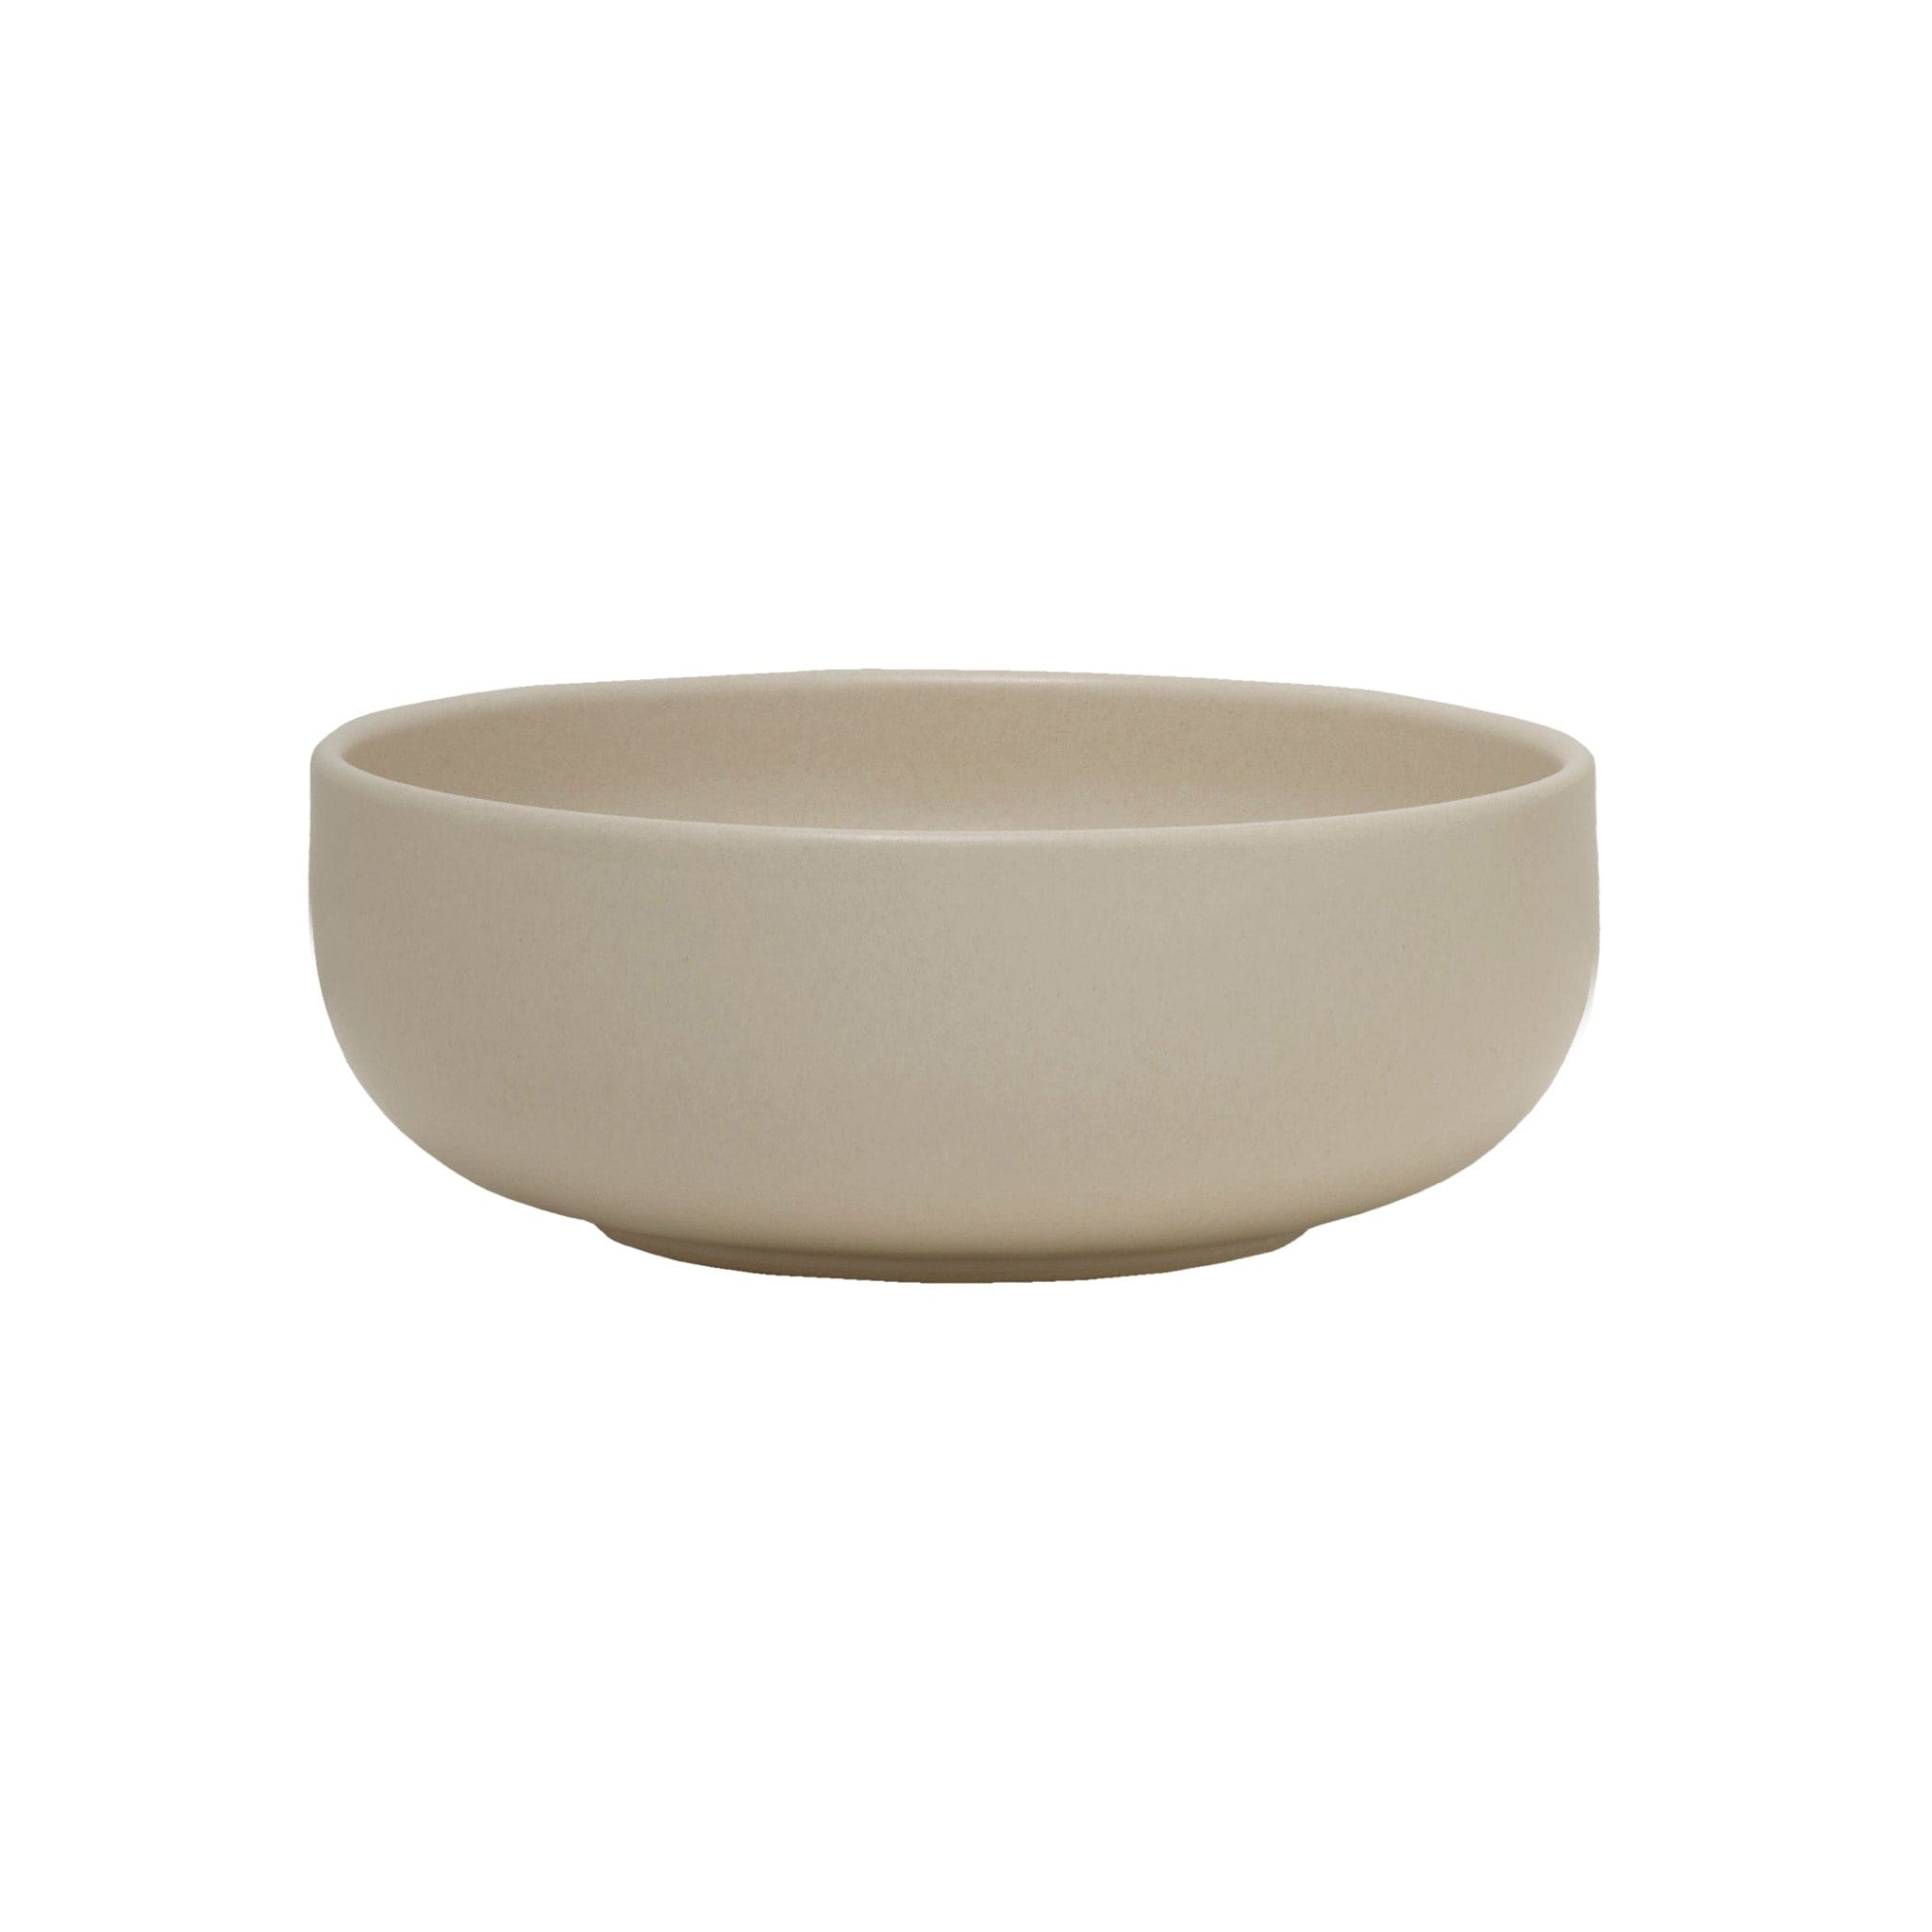 Solitude Stoneware Bowl 5in / 11oz